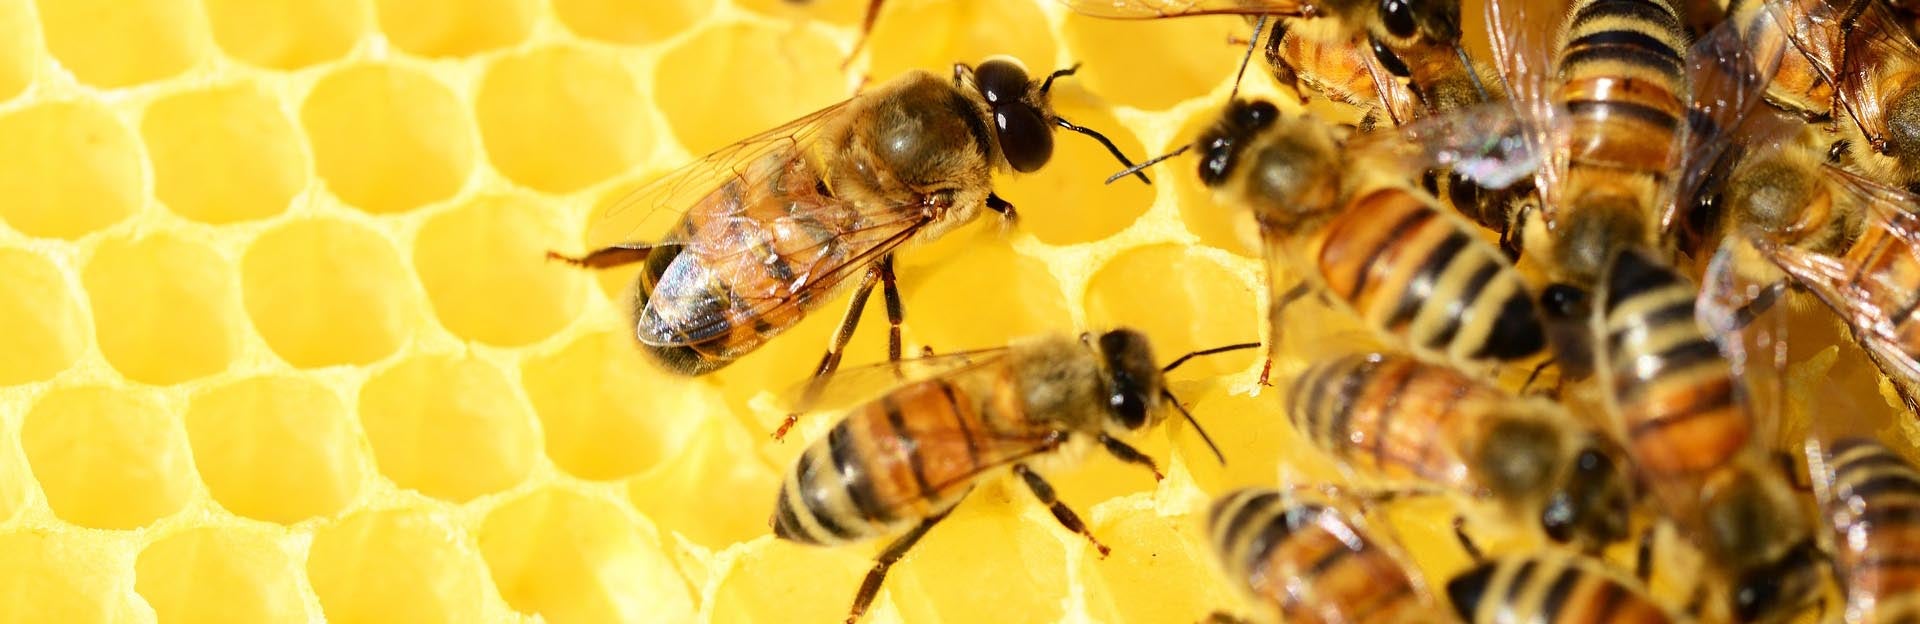 Honeybee Dance Language Bees